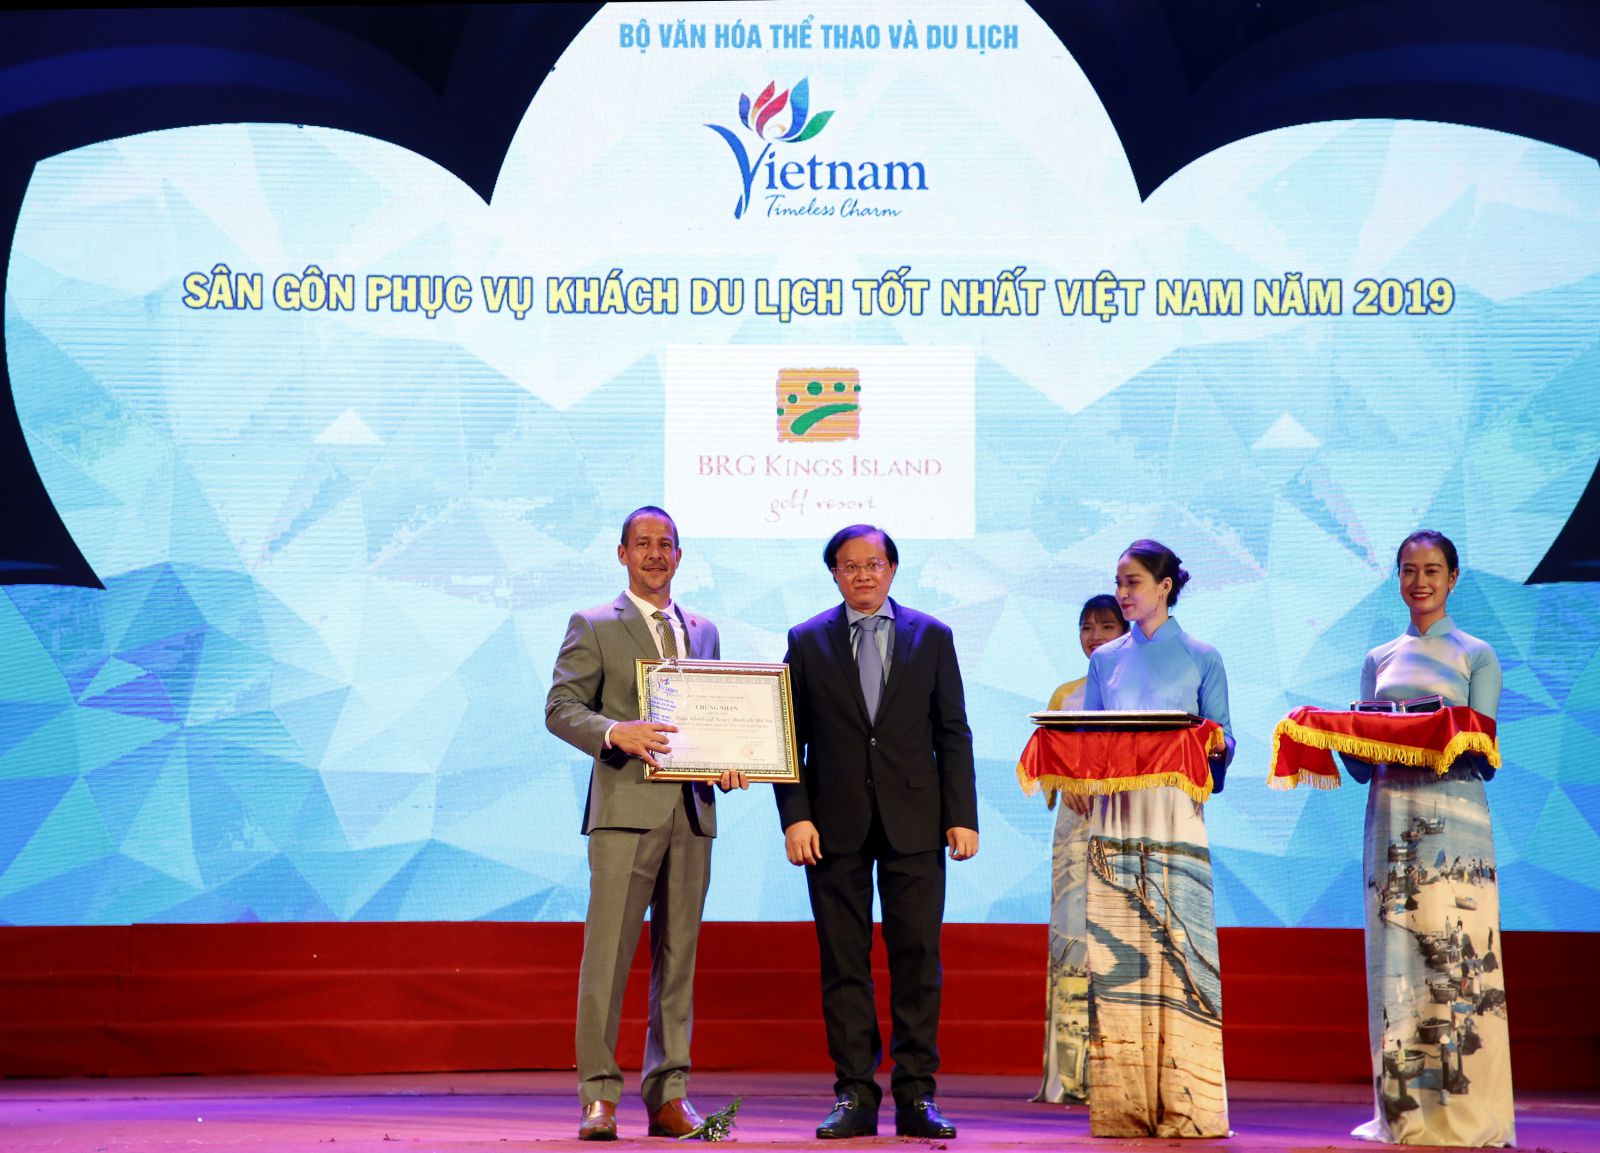 Ông Evans Mahoney nhận giải sân gôn phục vụ khách du lịch tốt nhất Việt Nam 2019 cho sân BRG Kings Island Golf Resort.